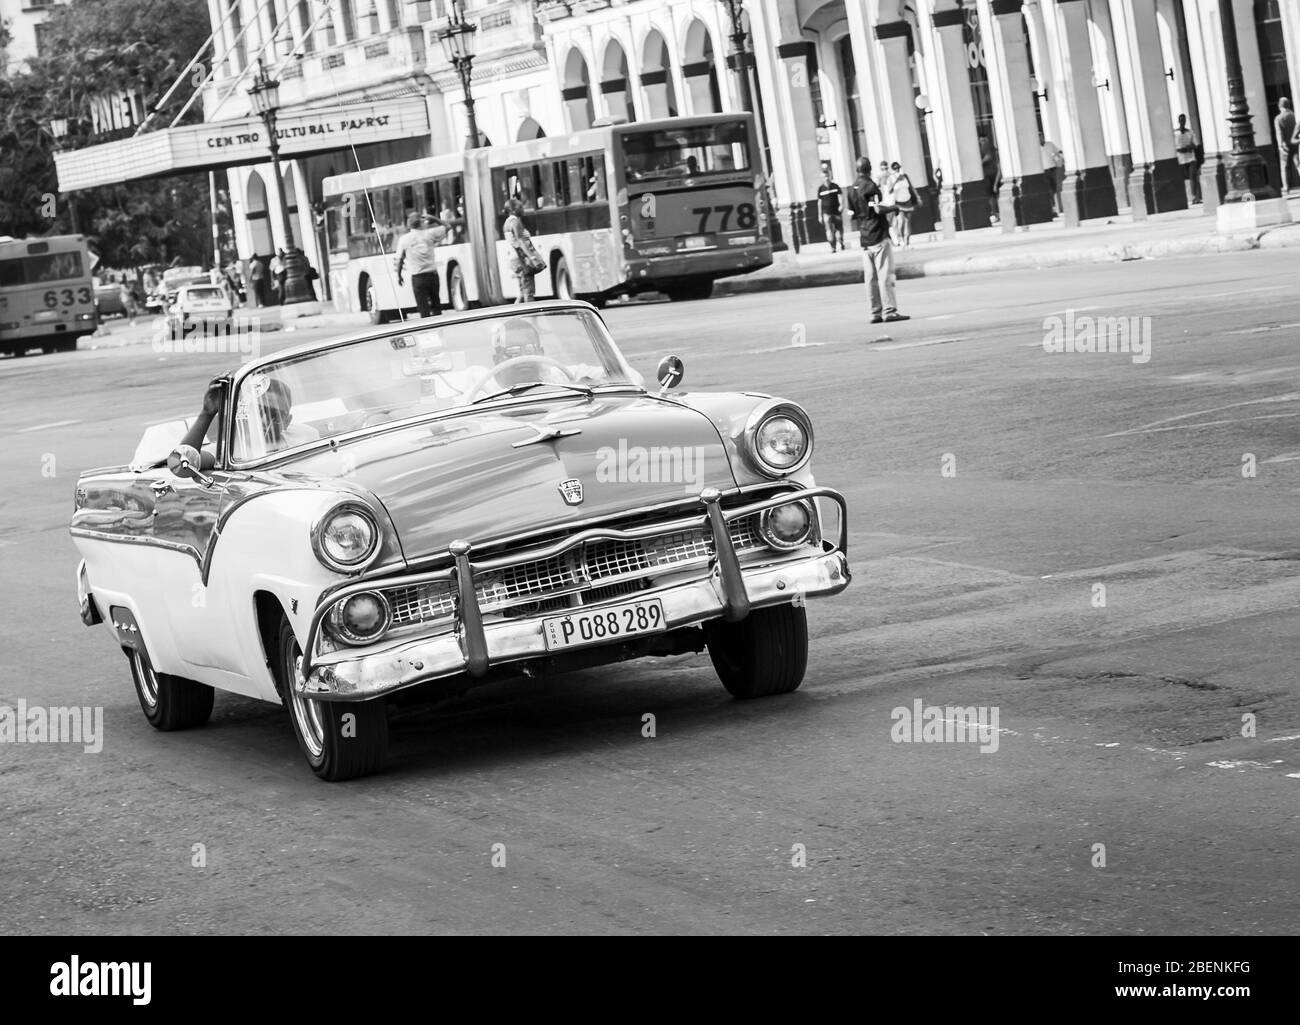 Une belle voiture classique rouge et blanche a été filmée à la Havane (Cuba) en août 2014. Banque D'Images